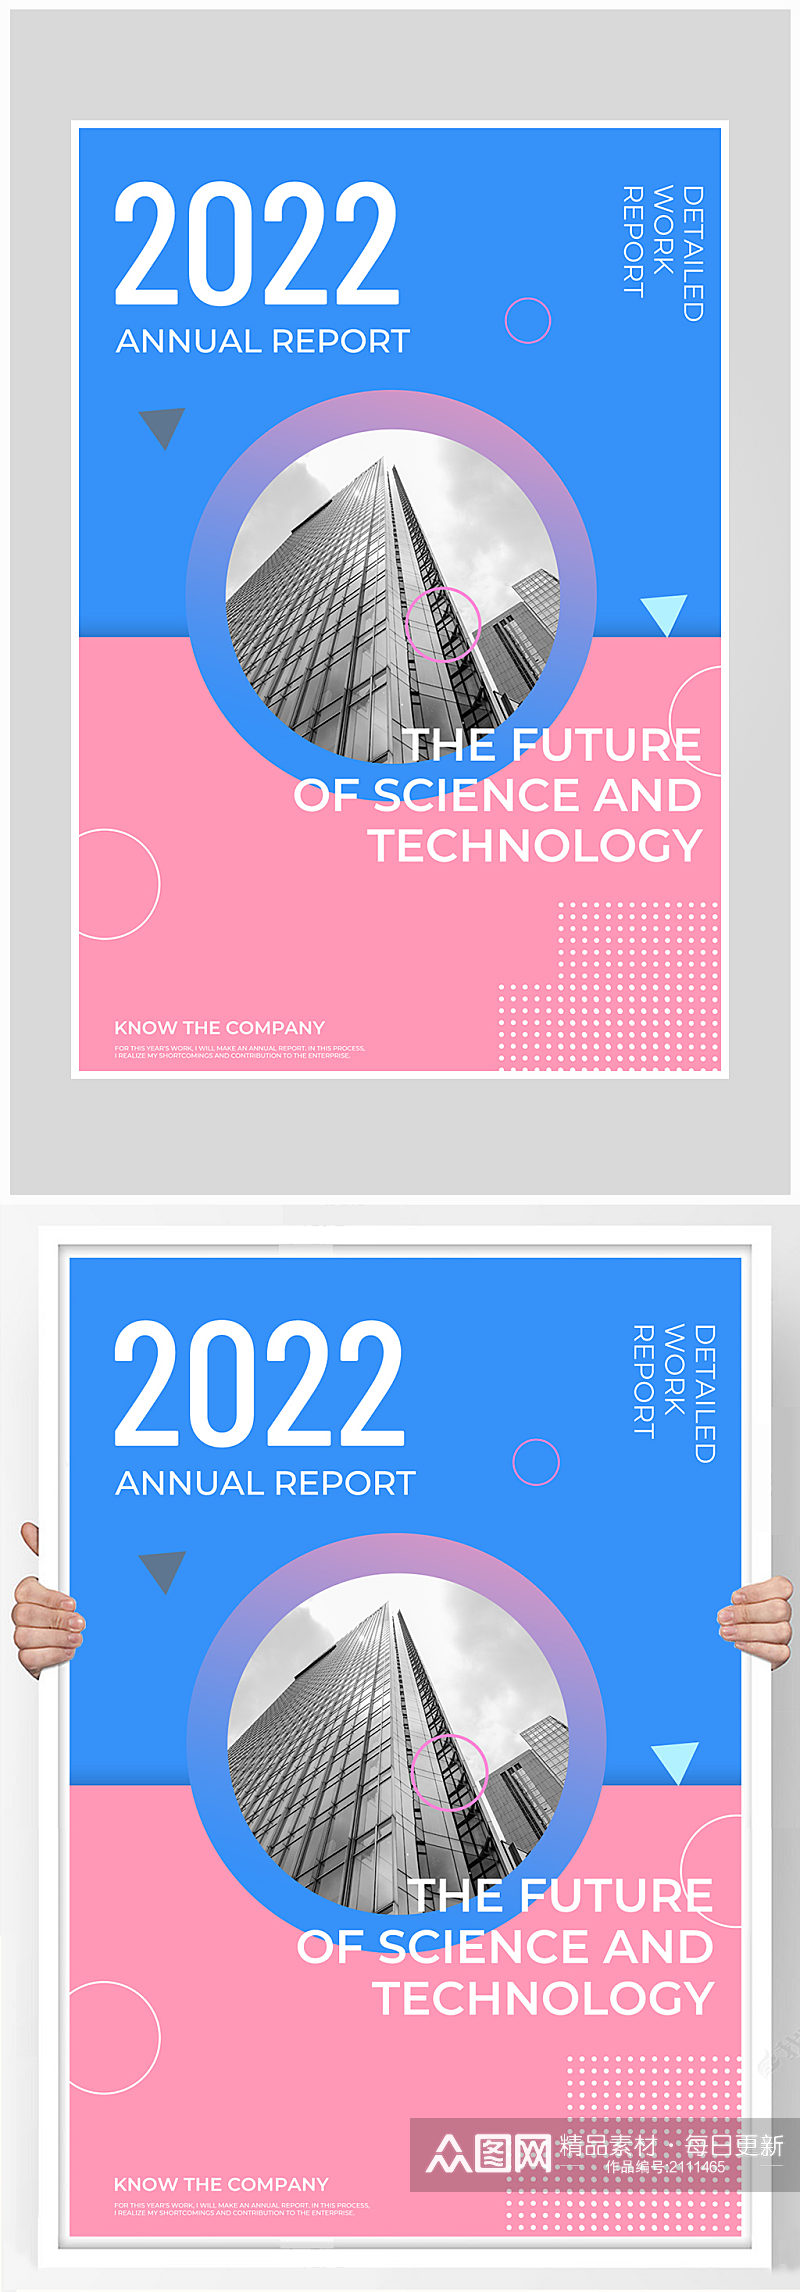 创意质感简约2022大气海报设计素材